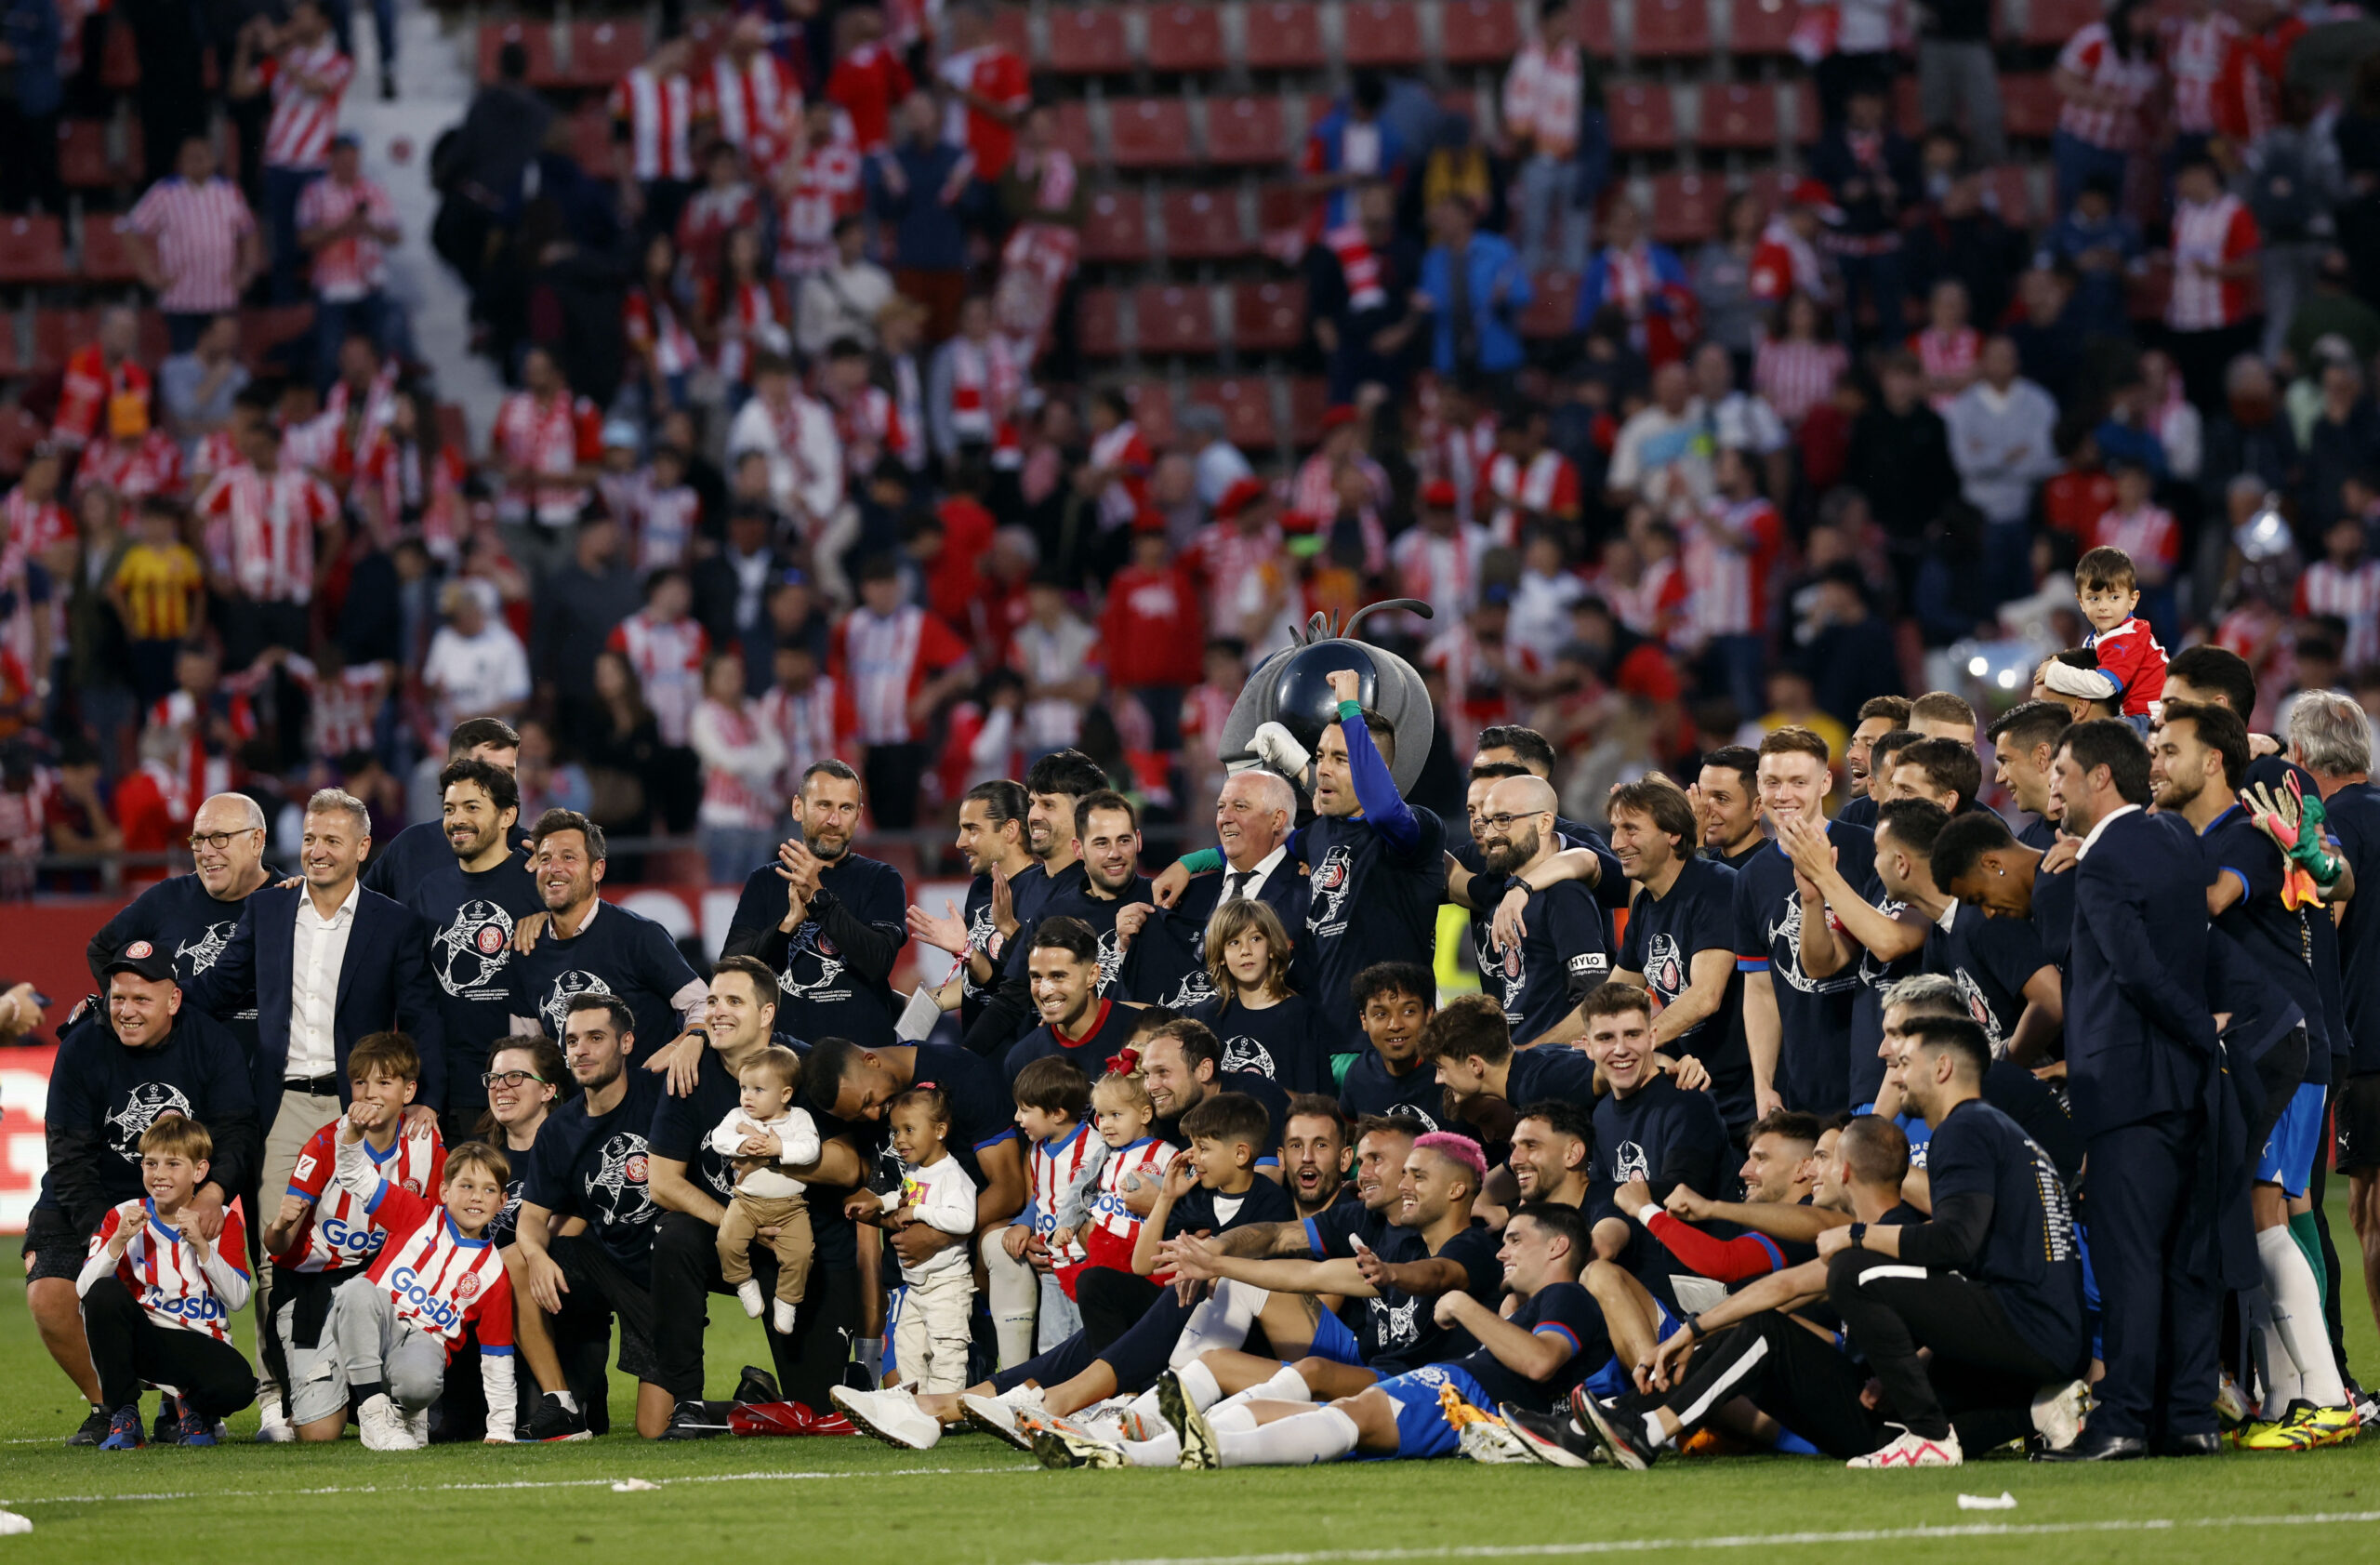 Igrači i treneri Girone nakon velike pobjede/Foto REUTERS